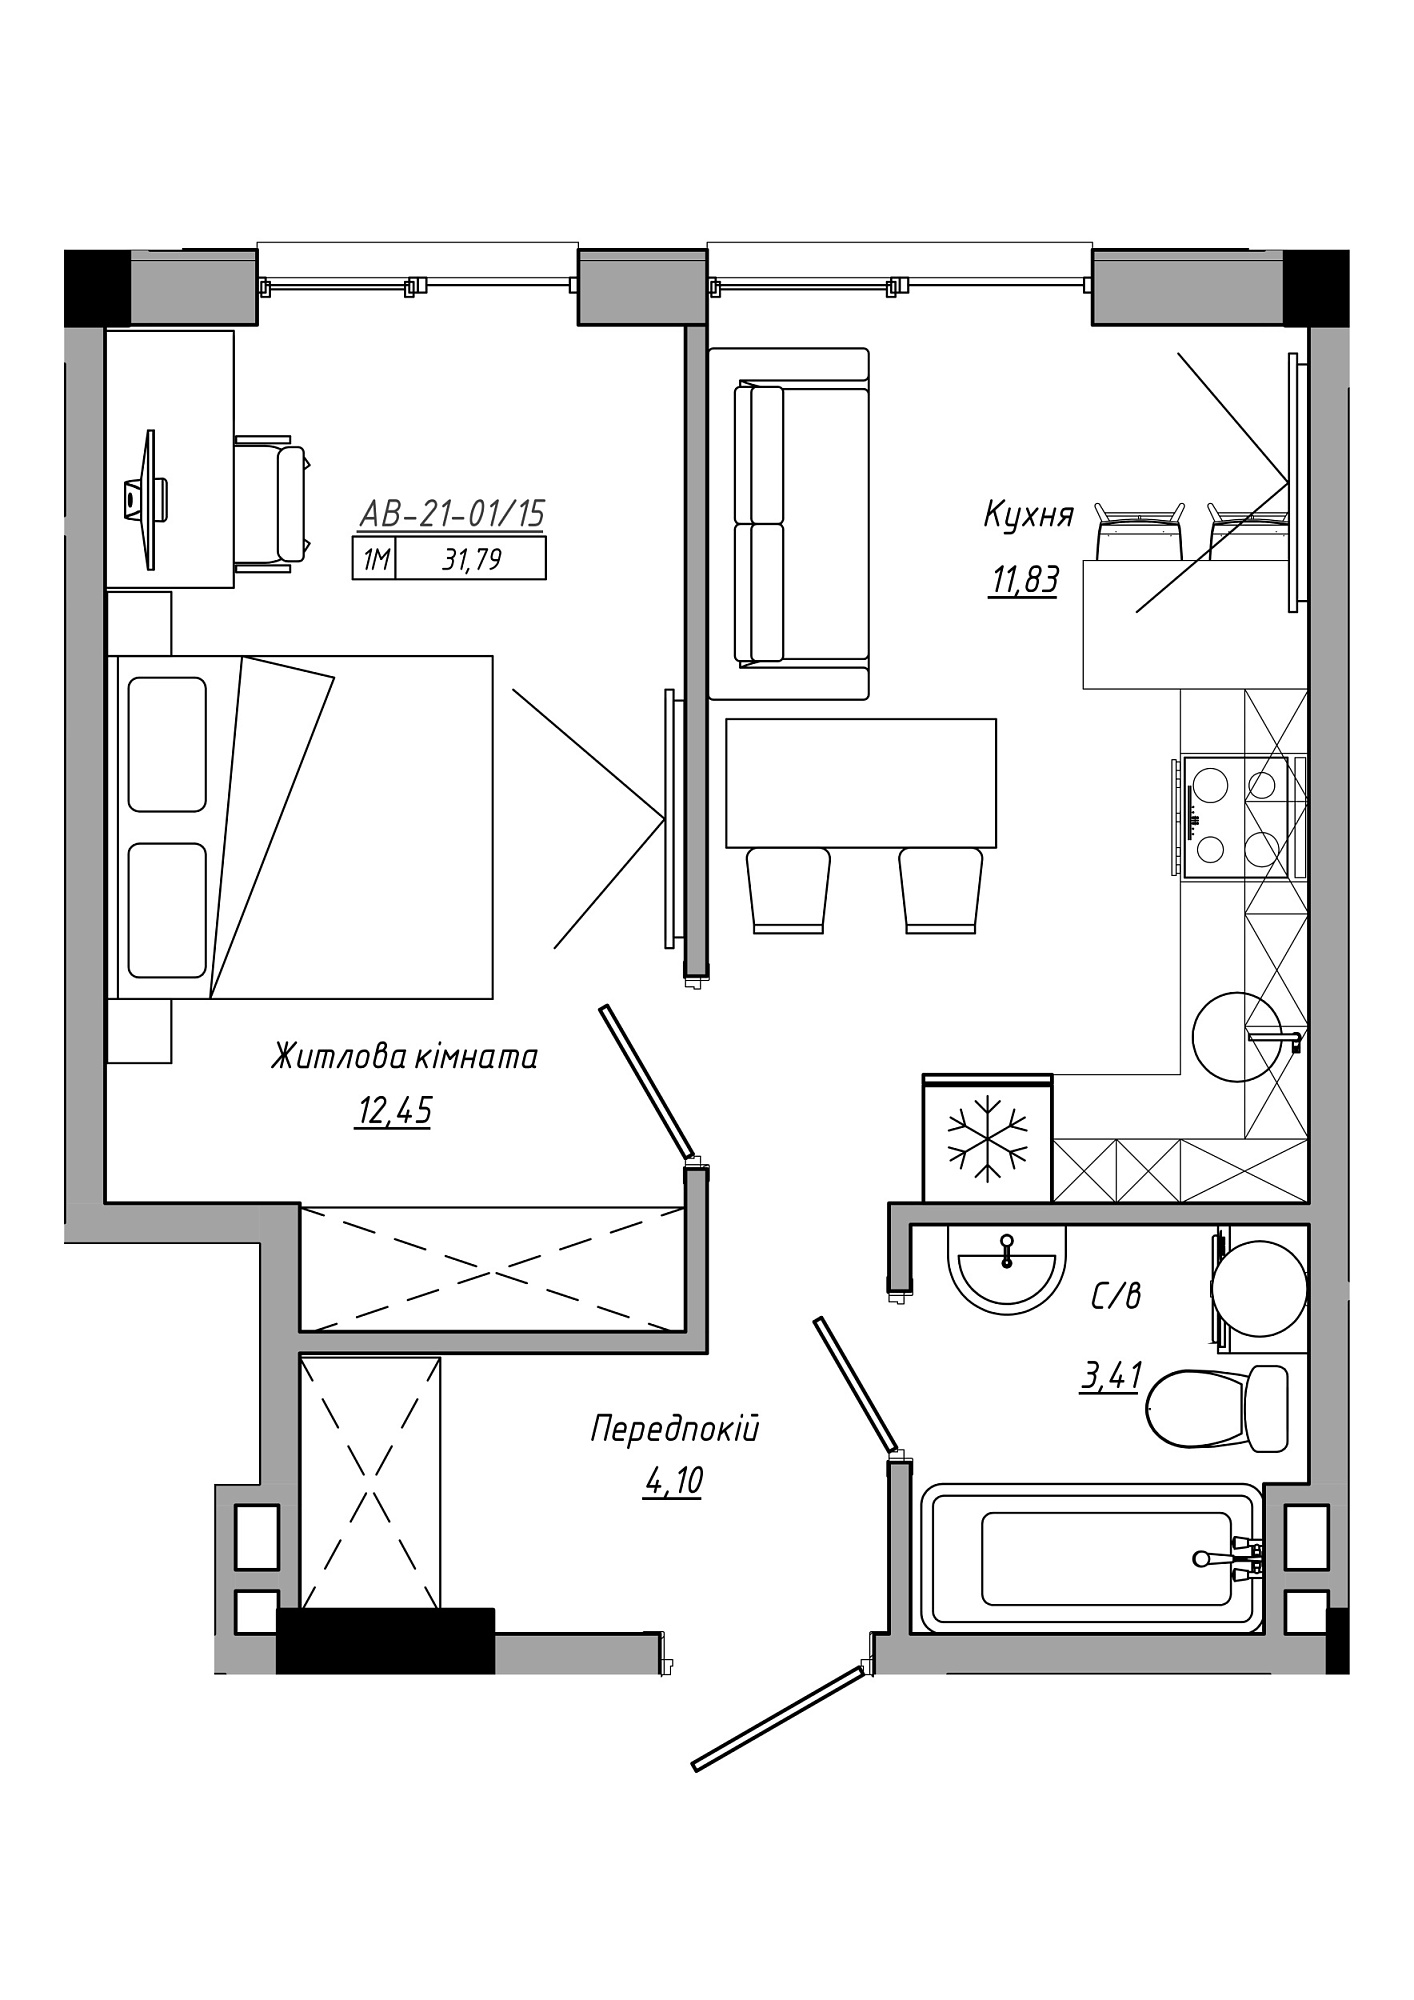 Планування 1-к квартира площею 31.79м2, AB-21-01/00015.